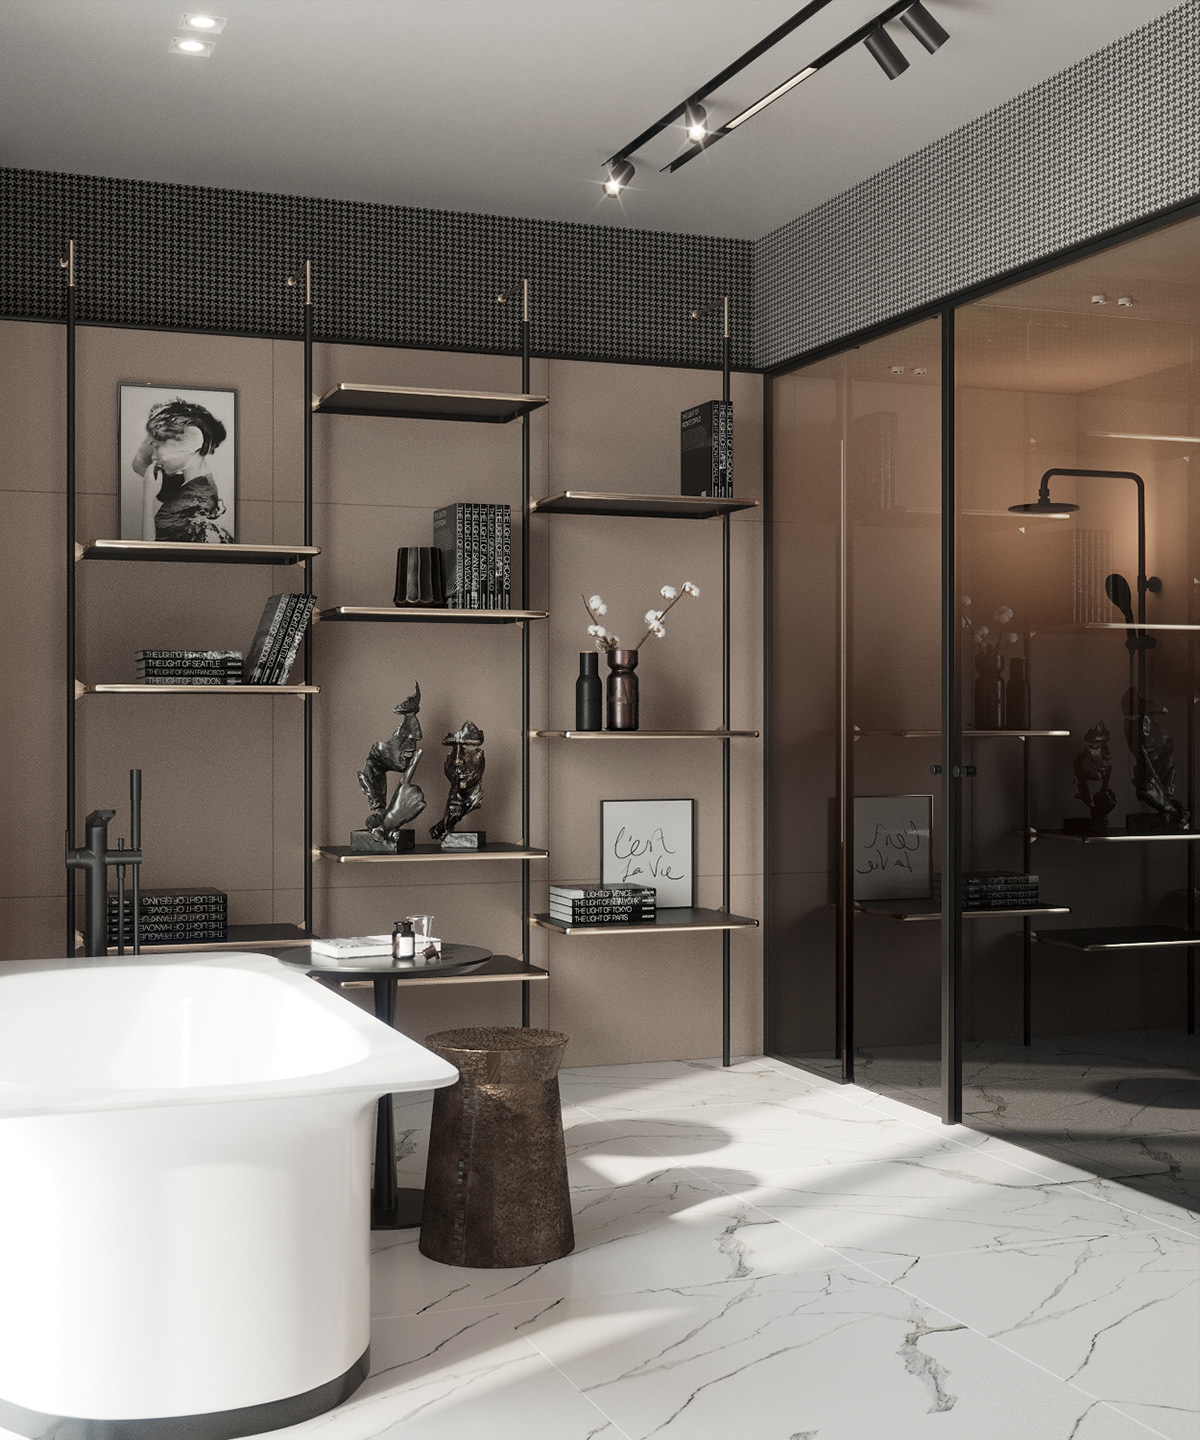 3ds max bathroom design corona Interior visualization